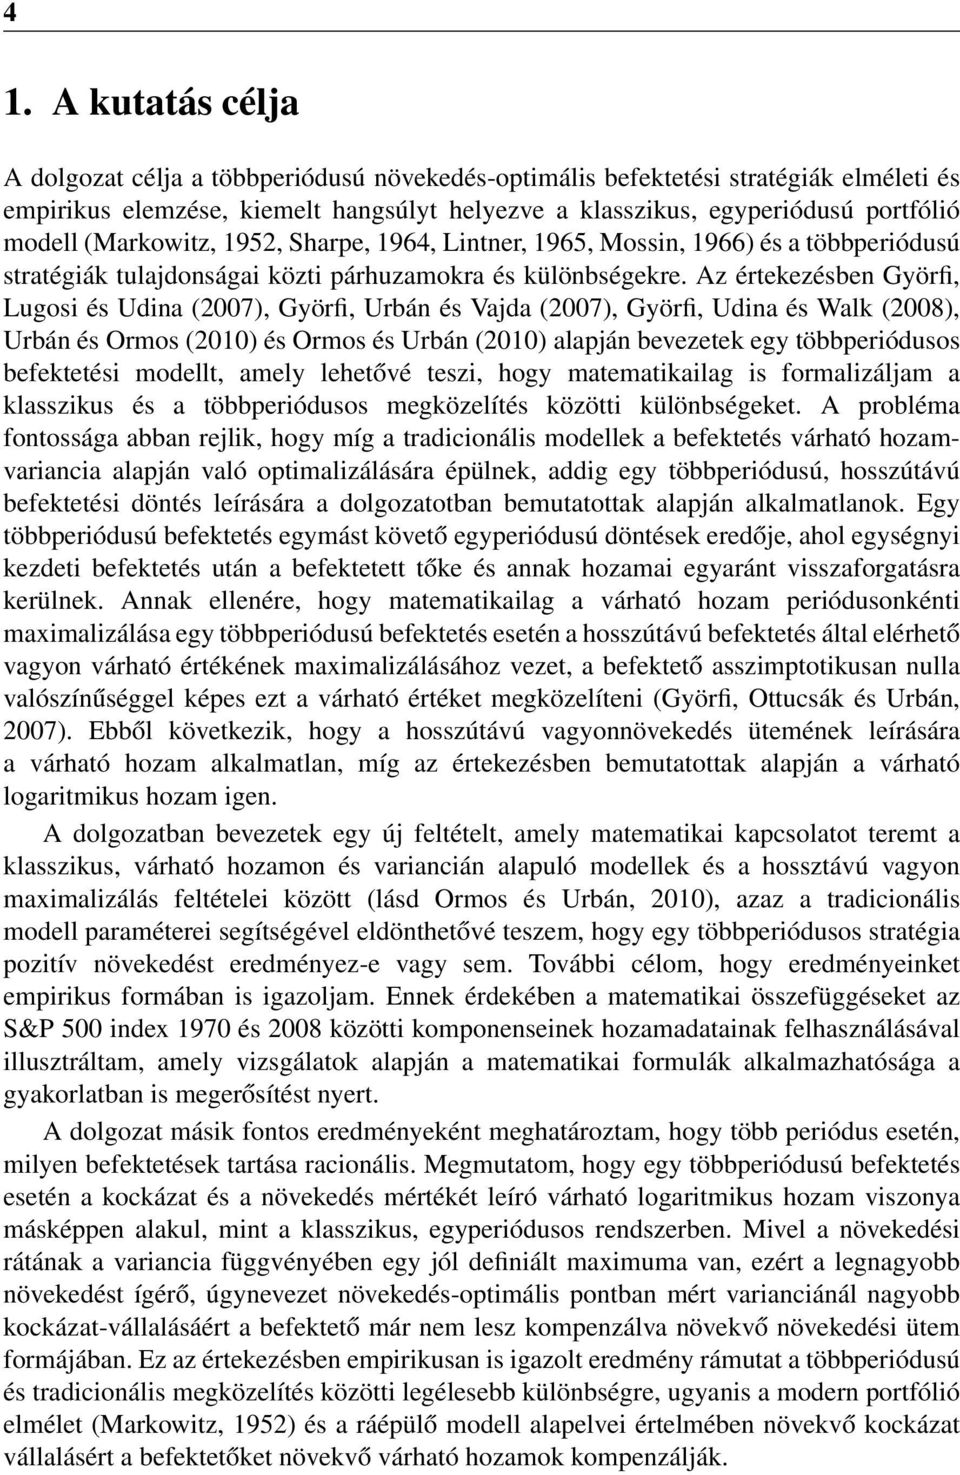 Az értekezésben Györfi, Lugosi és Udina (2007), Györfi, Urbán és Vajda (2007), Györfi, Udina és Walk (2008), Urbán és Ormos (200) és Ormos és Urbán (200) alapján bevezetek egy többperiódusos